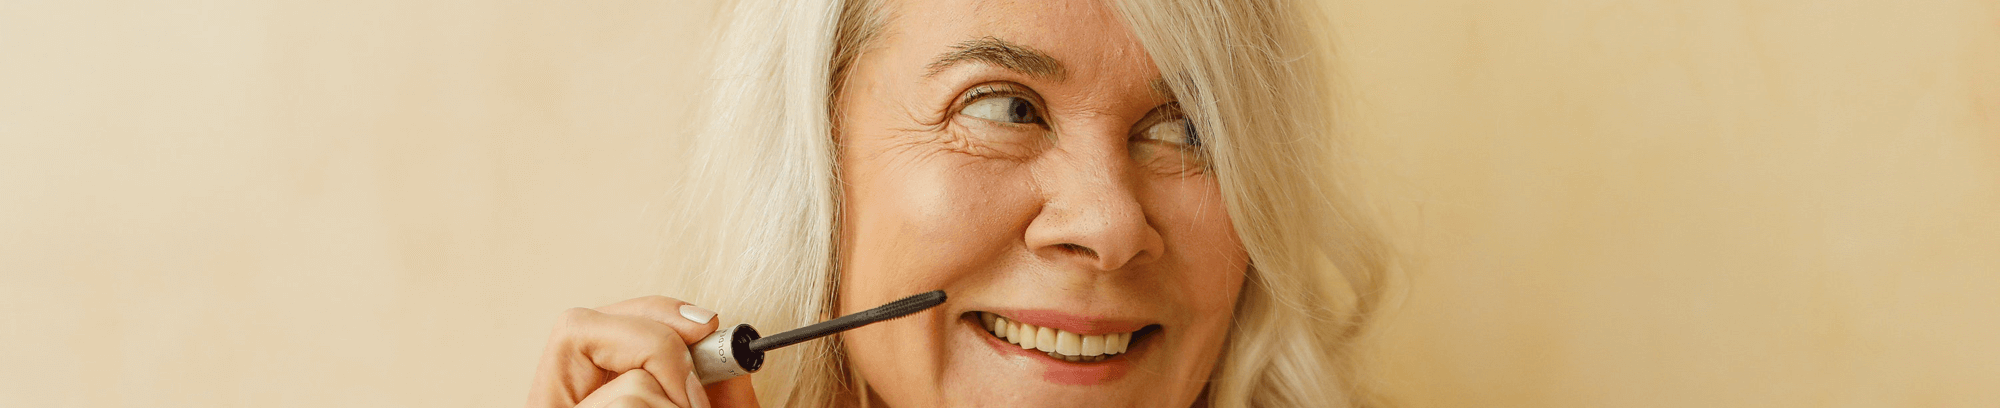 lær at lægge en naturlig makeup med makeupkurser hos FOF Køge Bugt